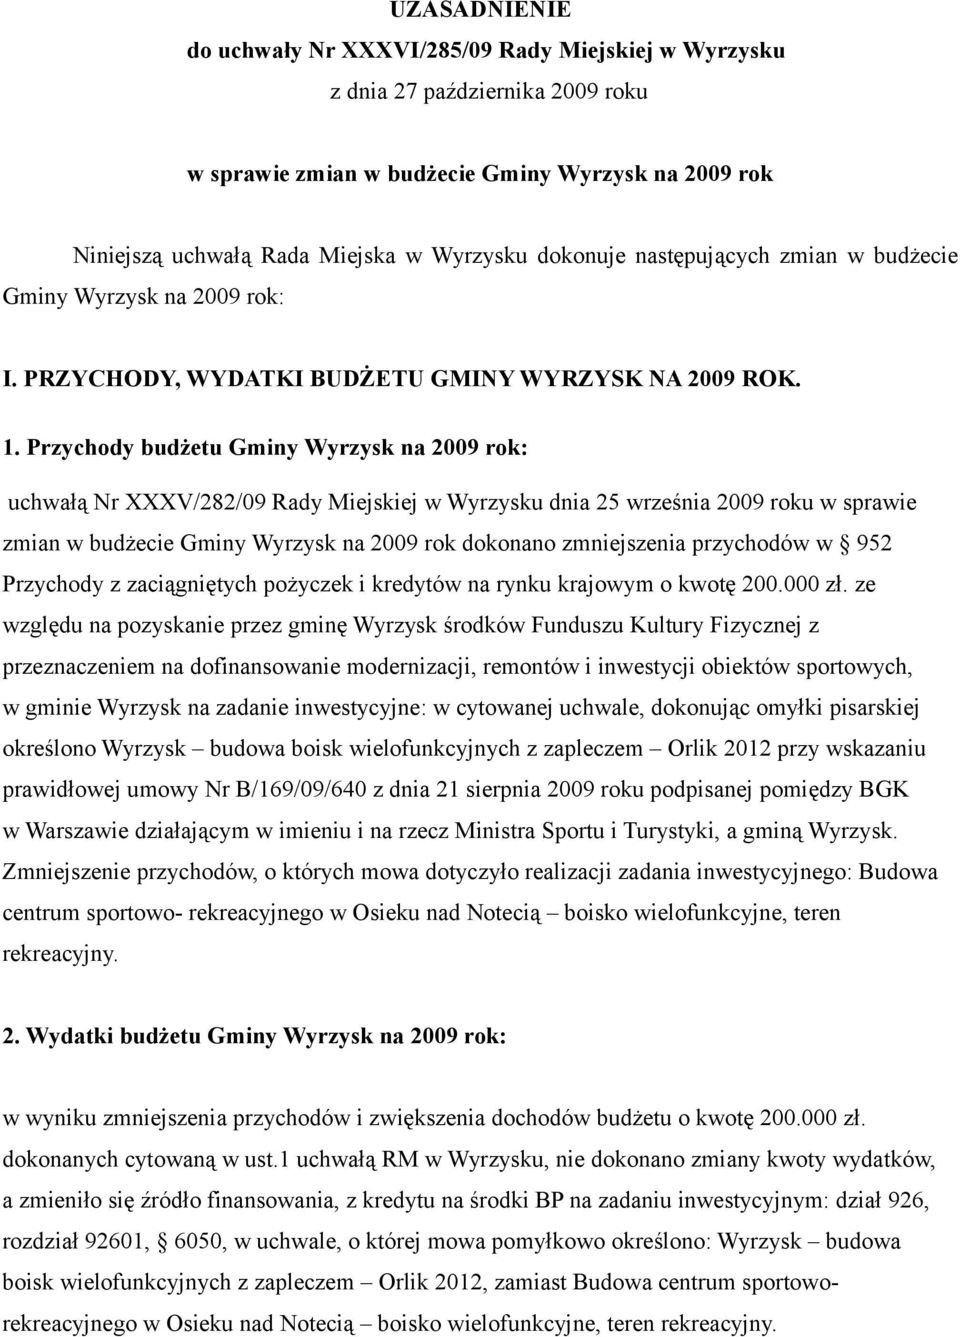 Przychody budżetu Gminy Wyrzysk na 2009 rok: uchwałą Nr XXXV/282/09 Rady Miejskiej w Wyrzysku dnia 25 września 2009 roku w sprawie zmian w budżecie Gminy Wyrzysk na 2009 rok dokonano zmniejszenia